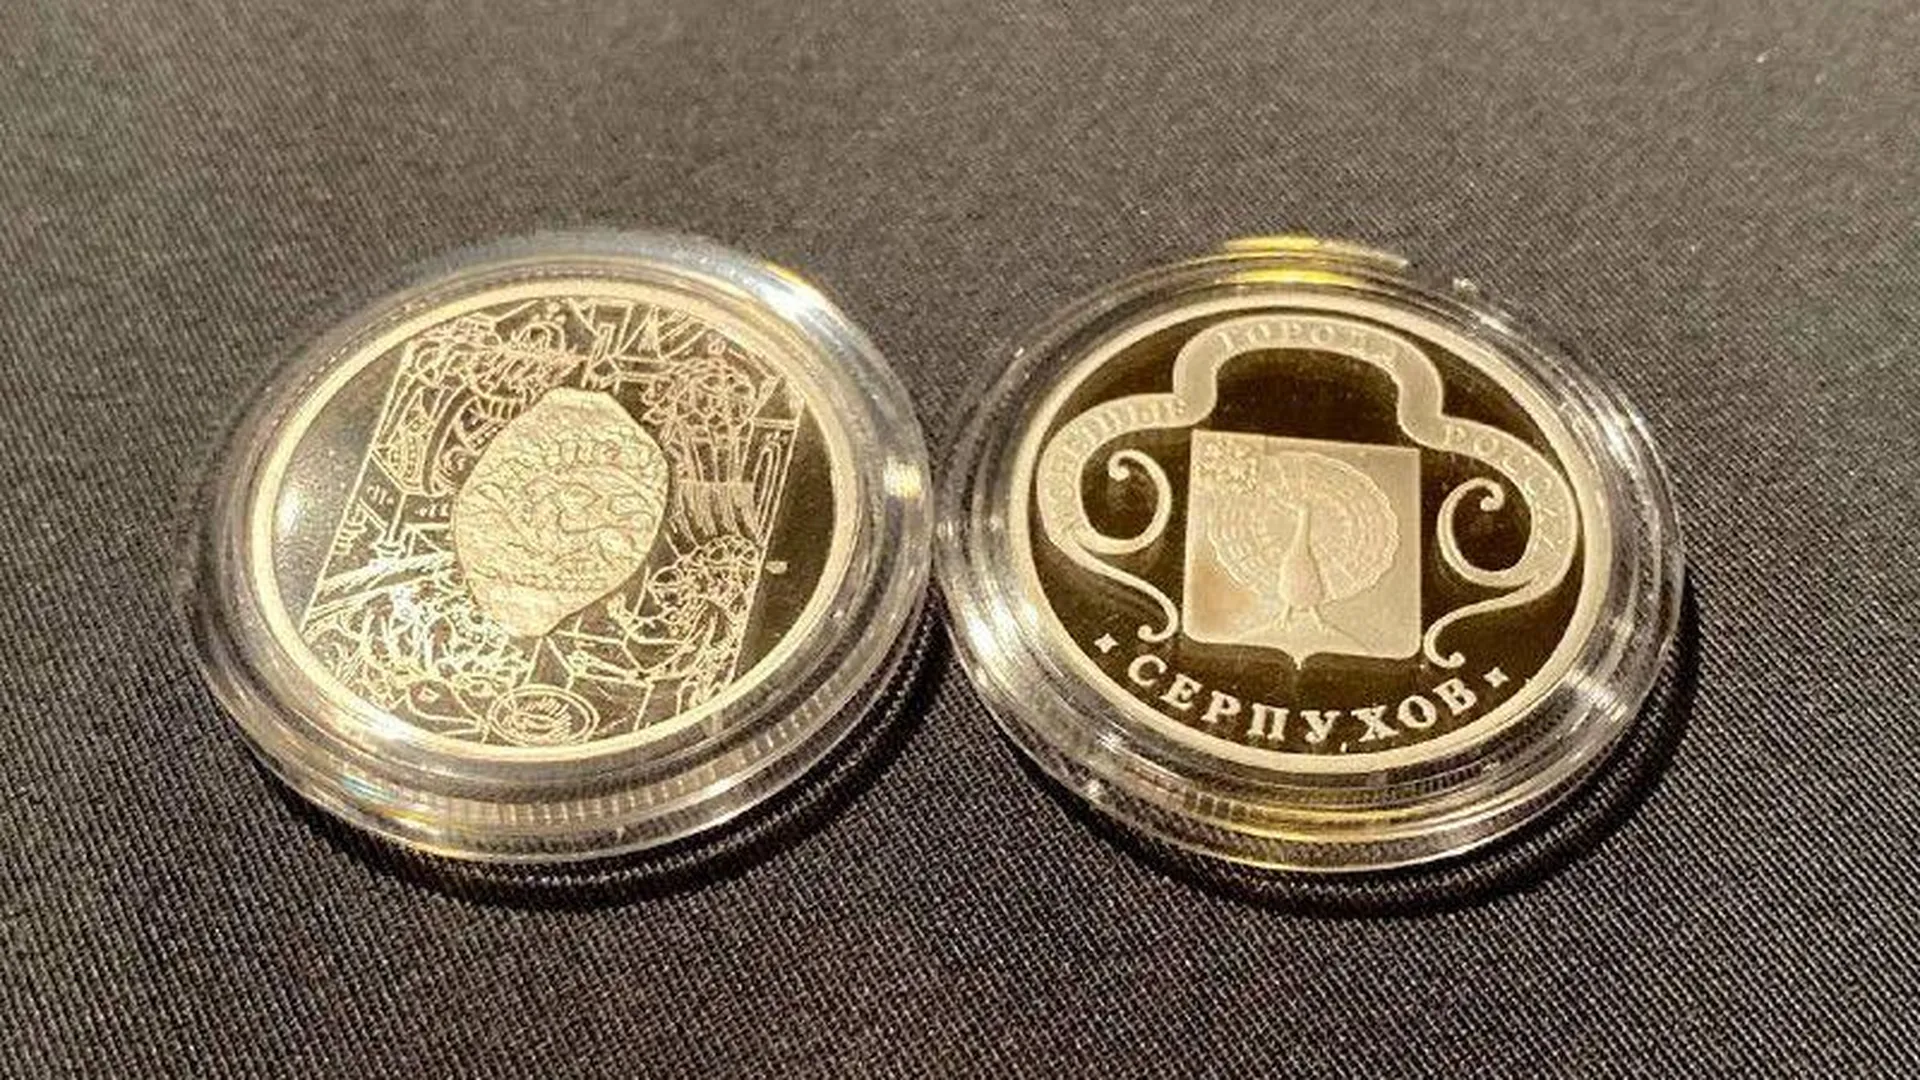 Редкие монеты с символикой Серпухова привезли в музей из Санкт-Петербурга